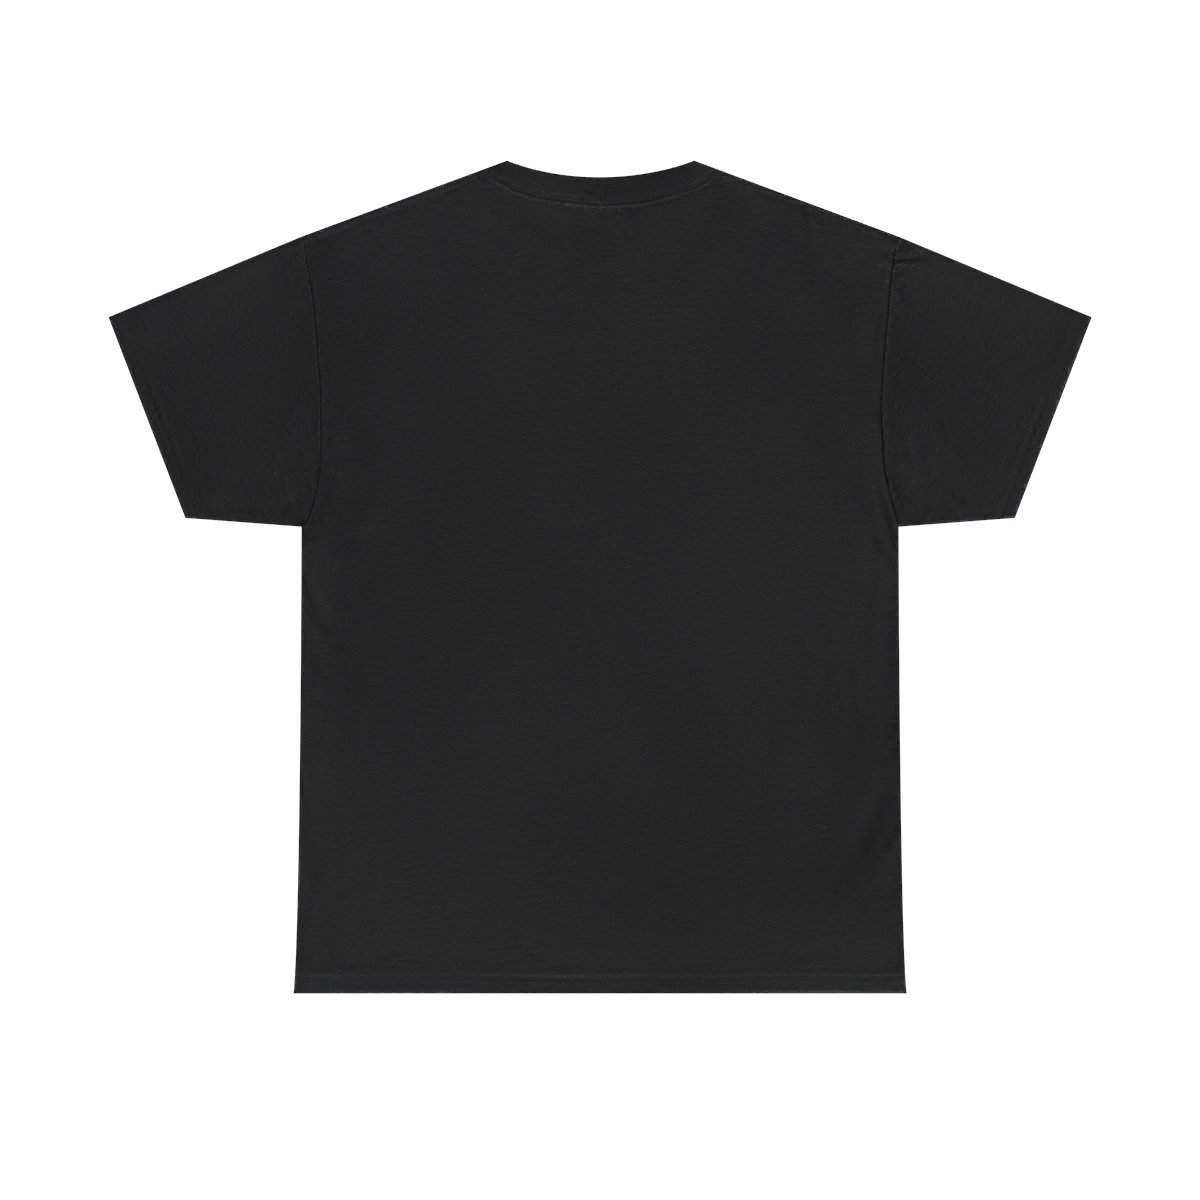 Motivik – Harbinger of Demise Short Sleeve Tshirt